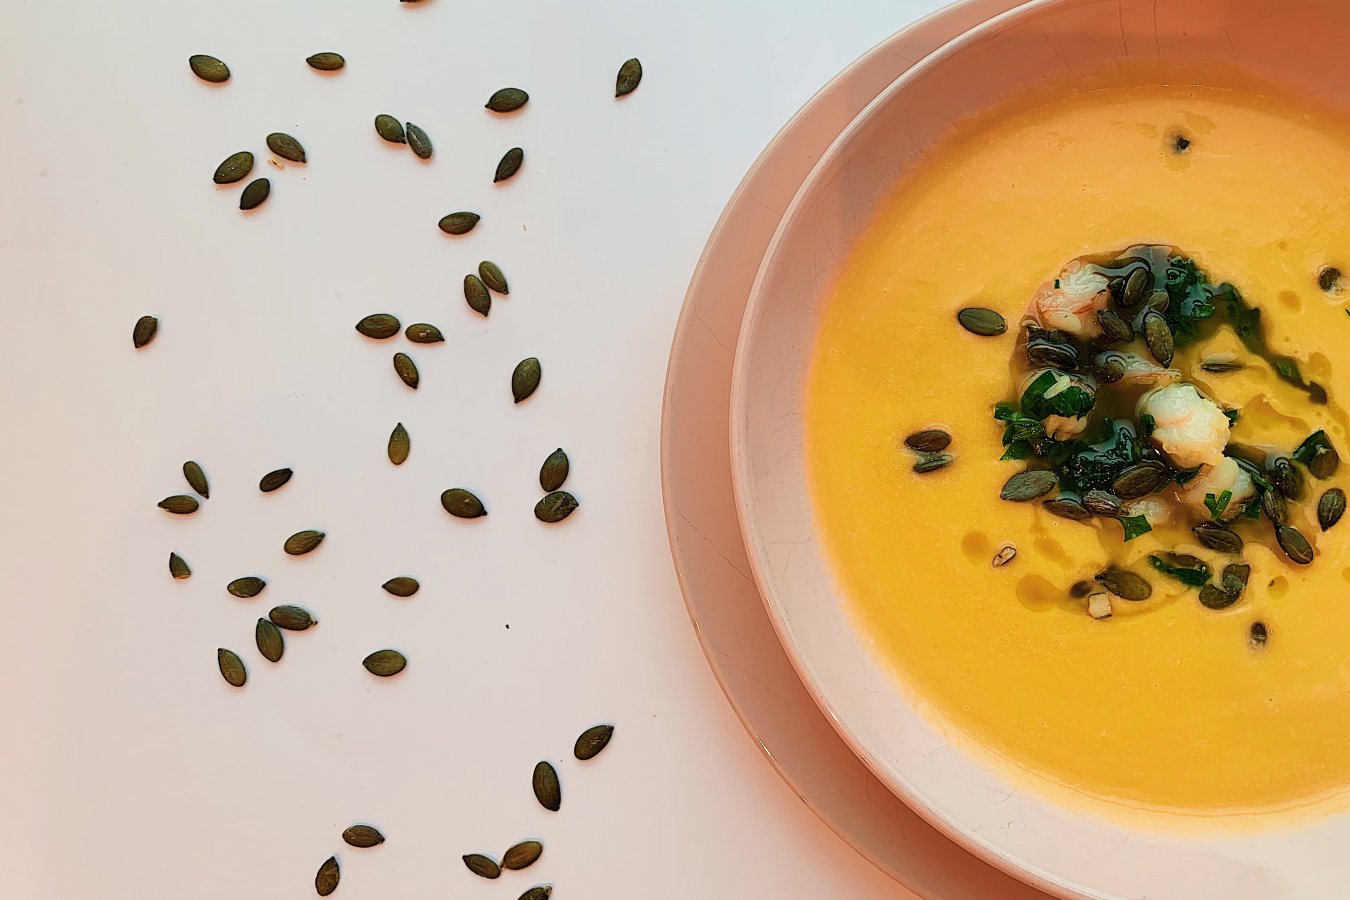 Видео-рецепт тыквенного крем-супа со сливками и курицей